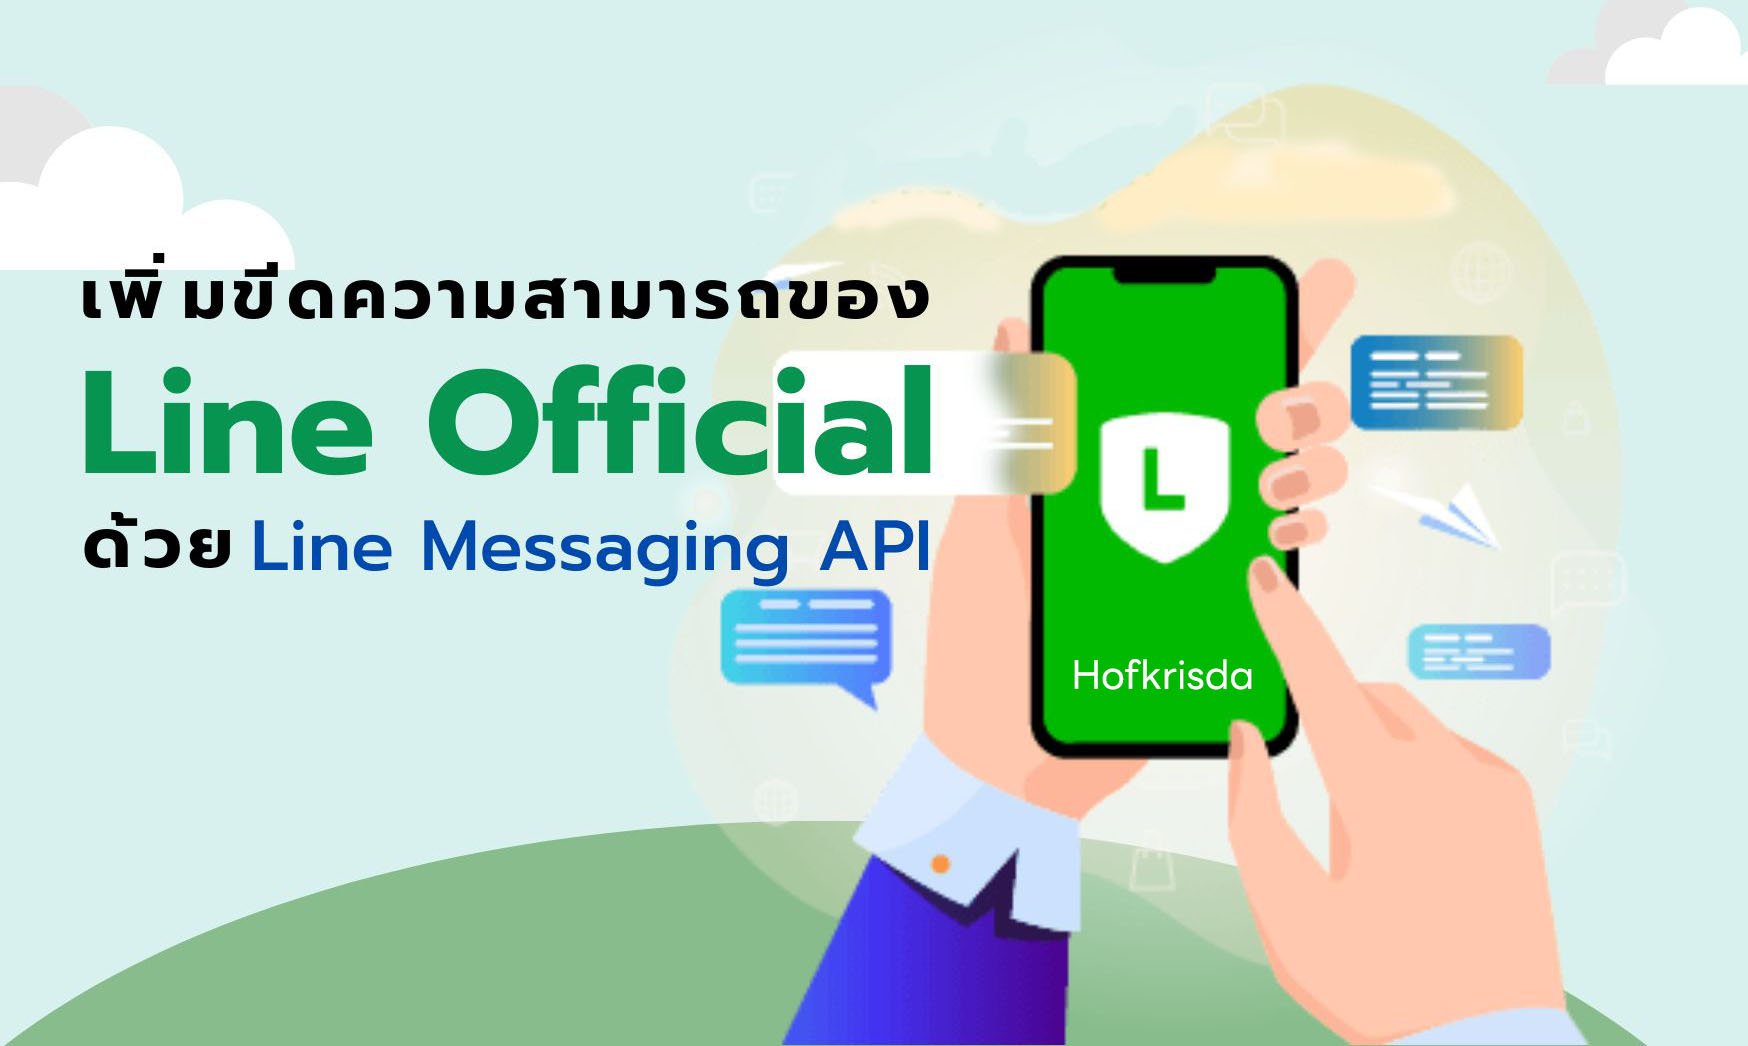 เพิ่มขีดความสามารถของ LINE Official ด้วย LINE Messaging API